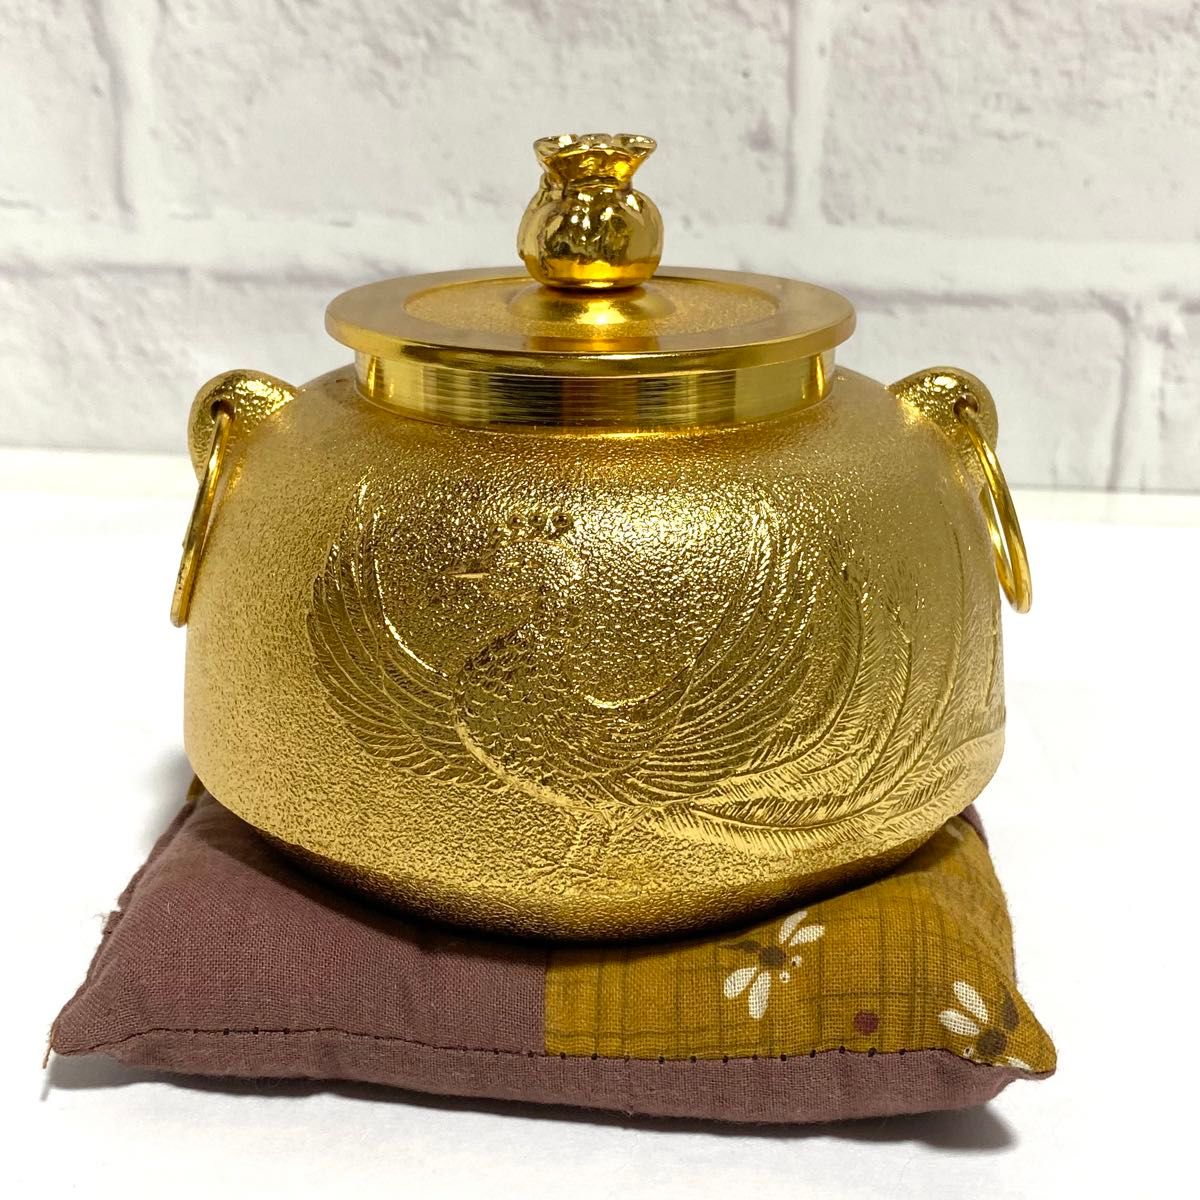 天皇陛下居 宝祚五十年奉祝 茶釜 鳳凰 24KGP ゴールド 金 茶道具